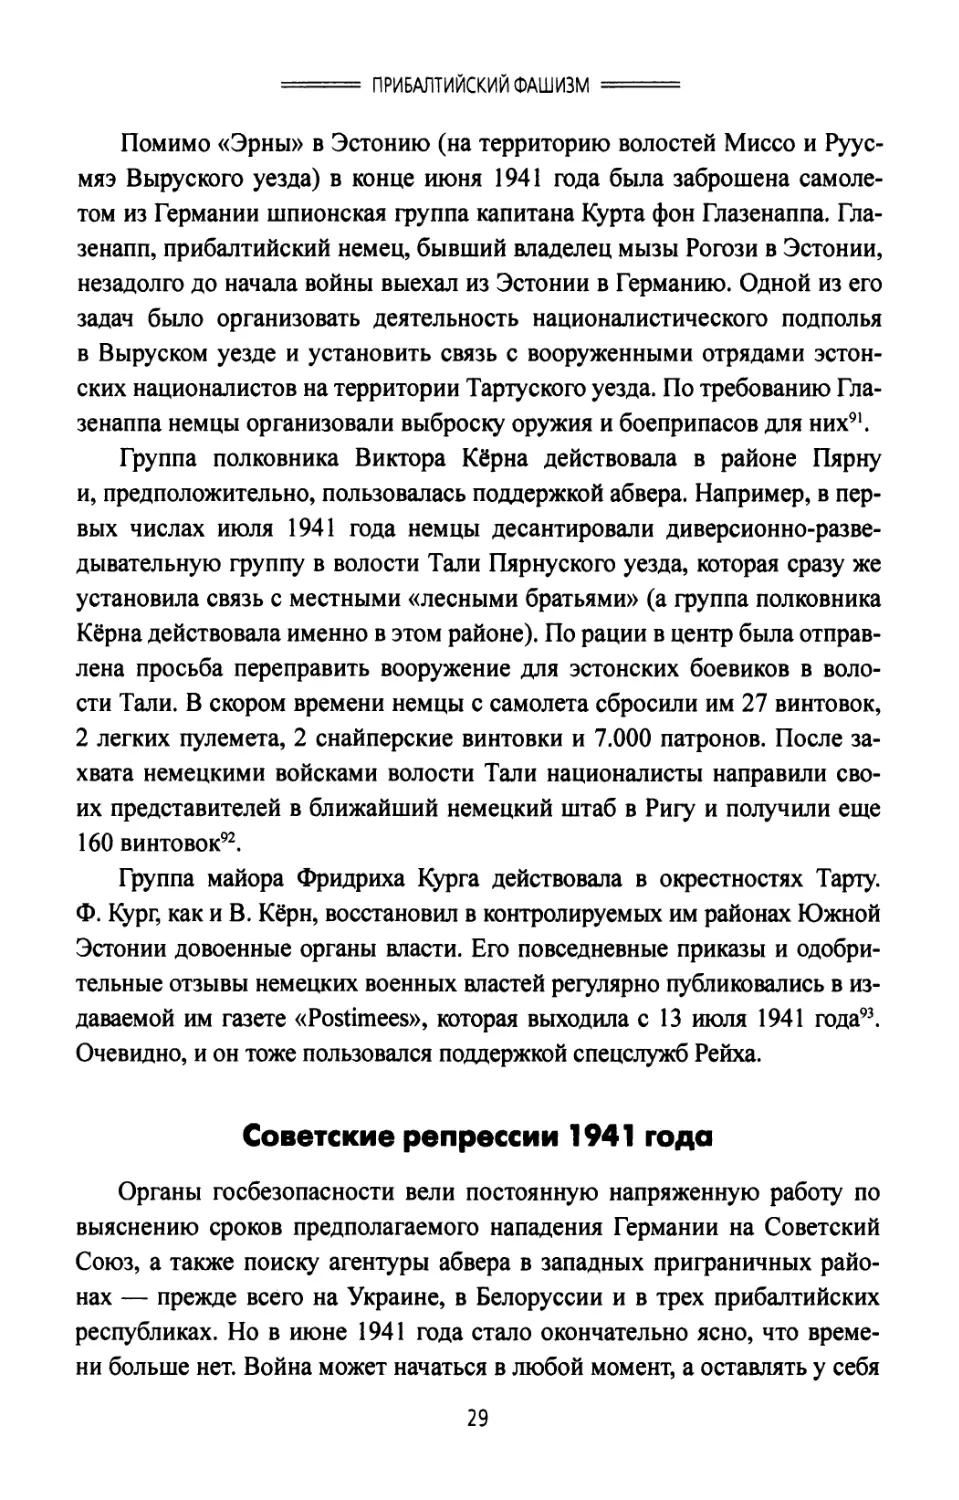 Советские репрессии 1941 года